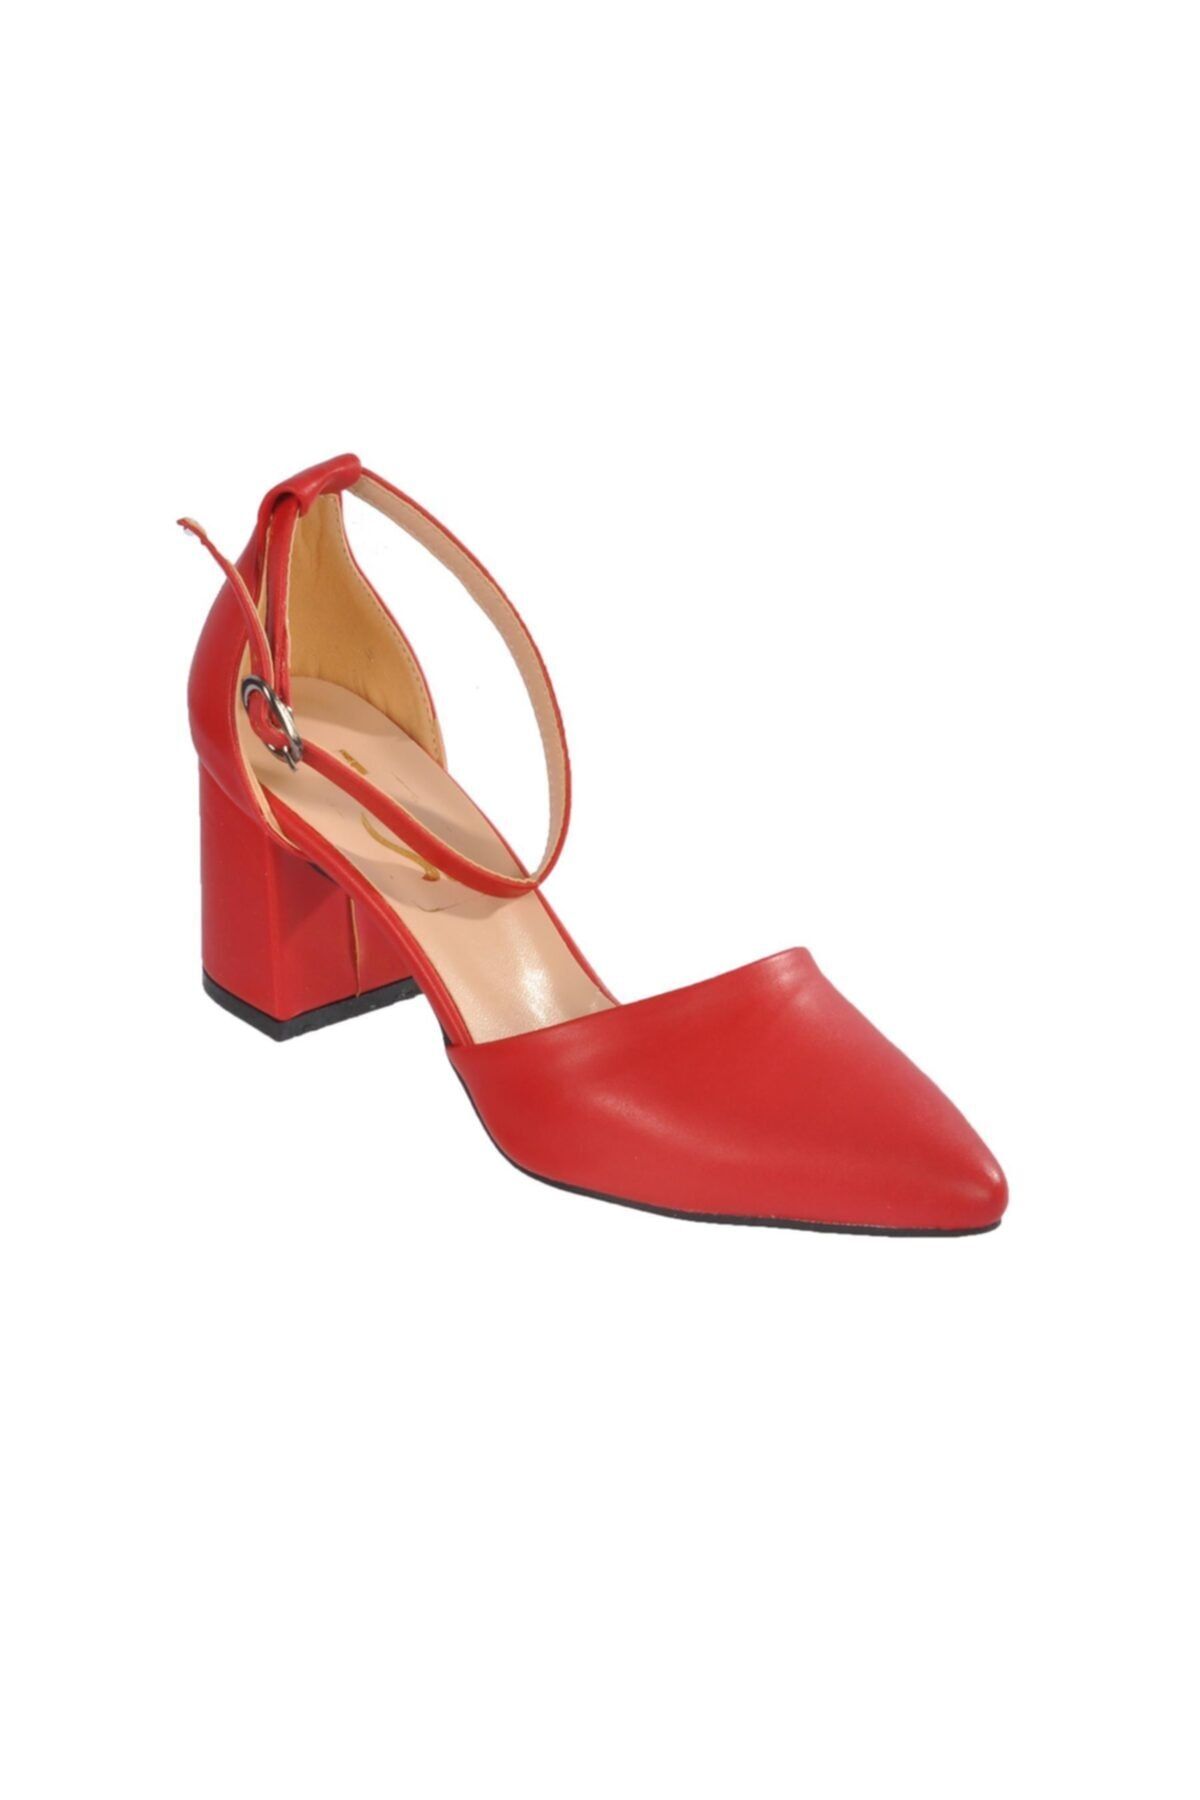 pabucmarketi Kırmızı Kadın Topuklu Ayakkabı